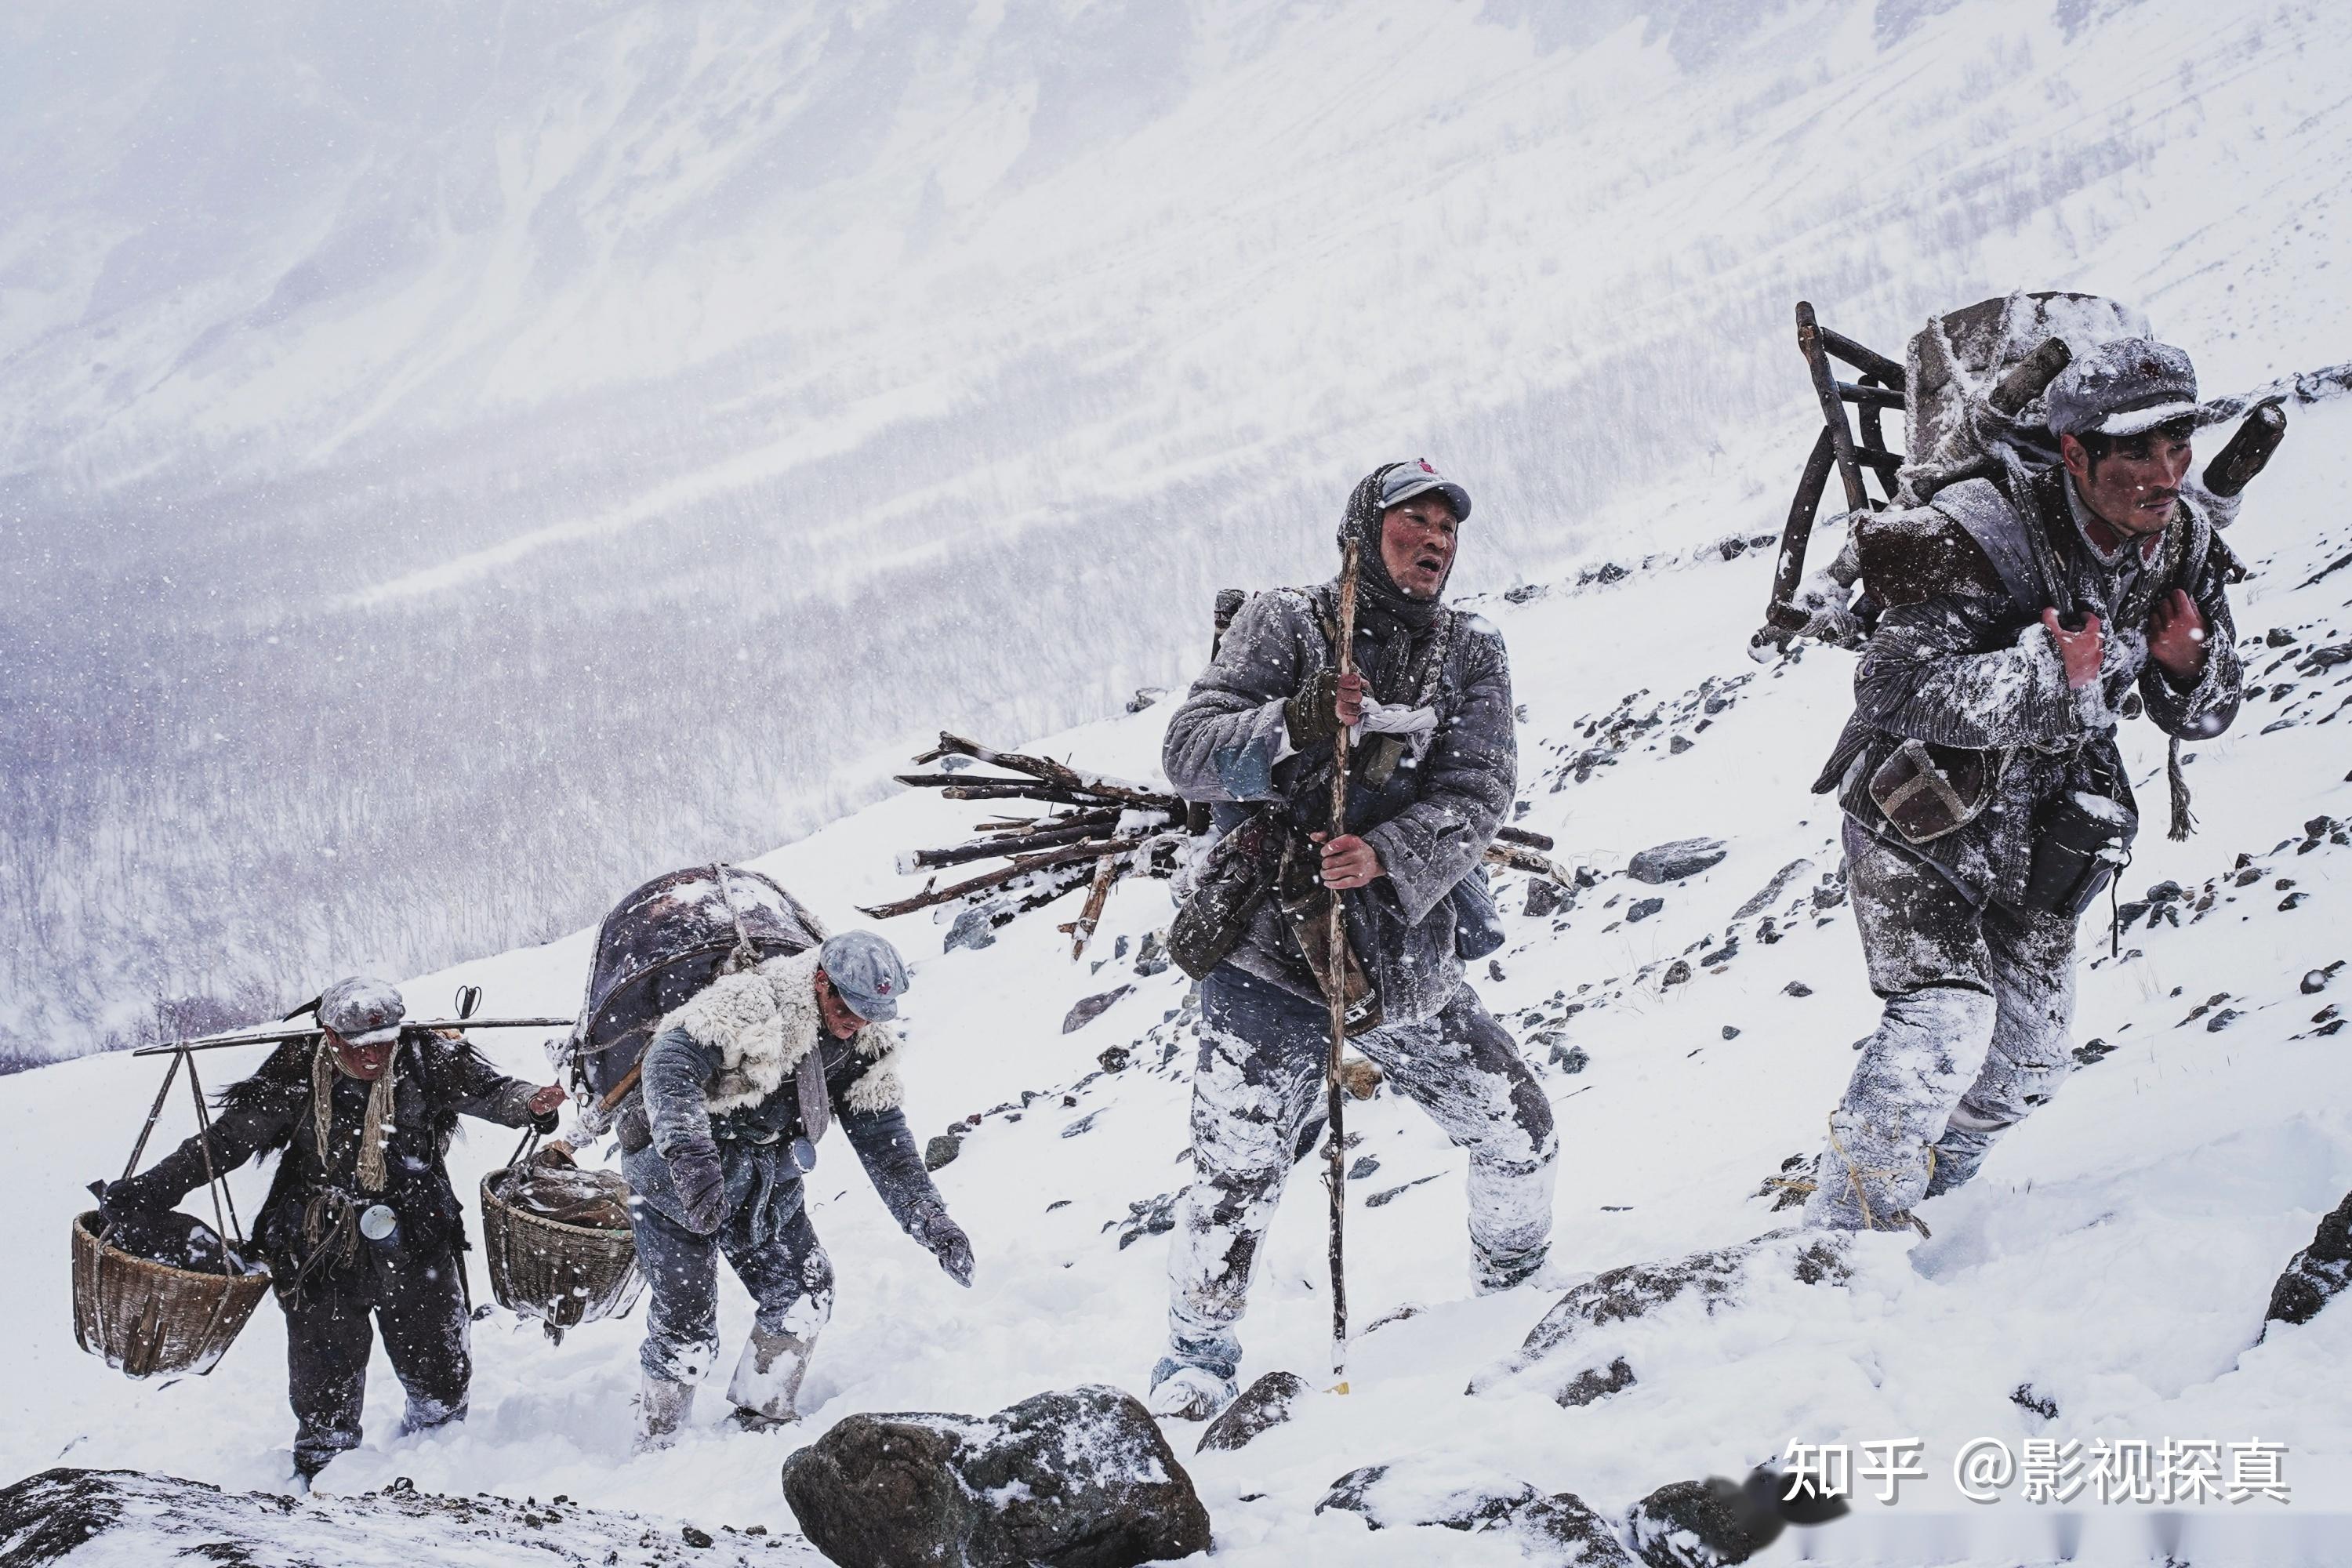 《雪山的篝火》中,红三军团一连炊事班的9名战士最后全部牺牲在了长征